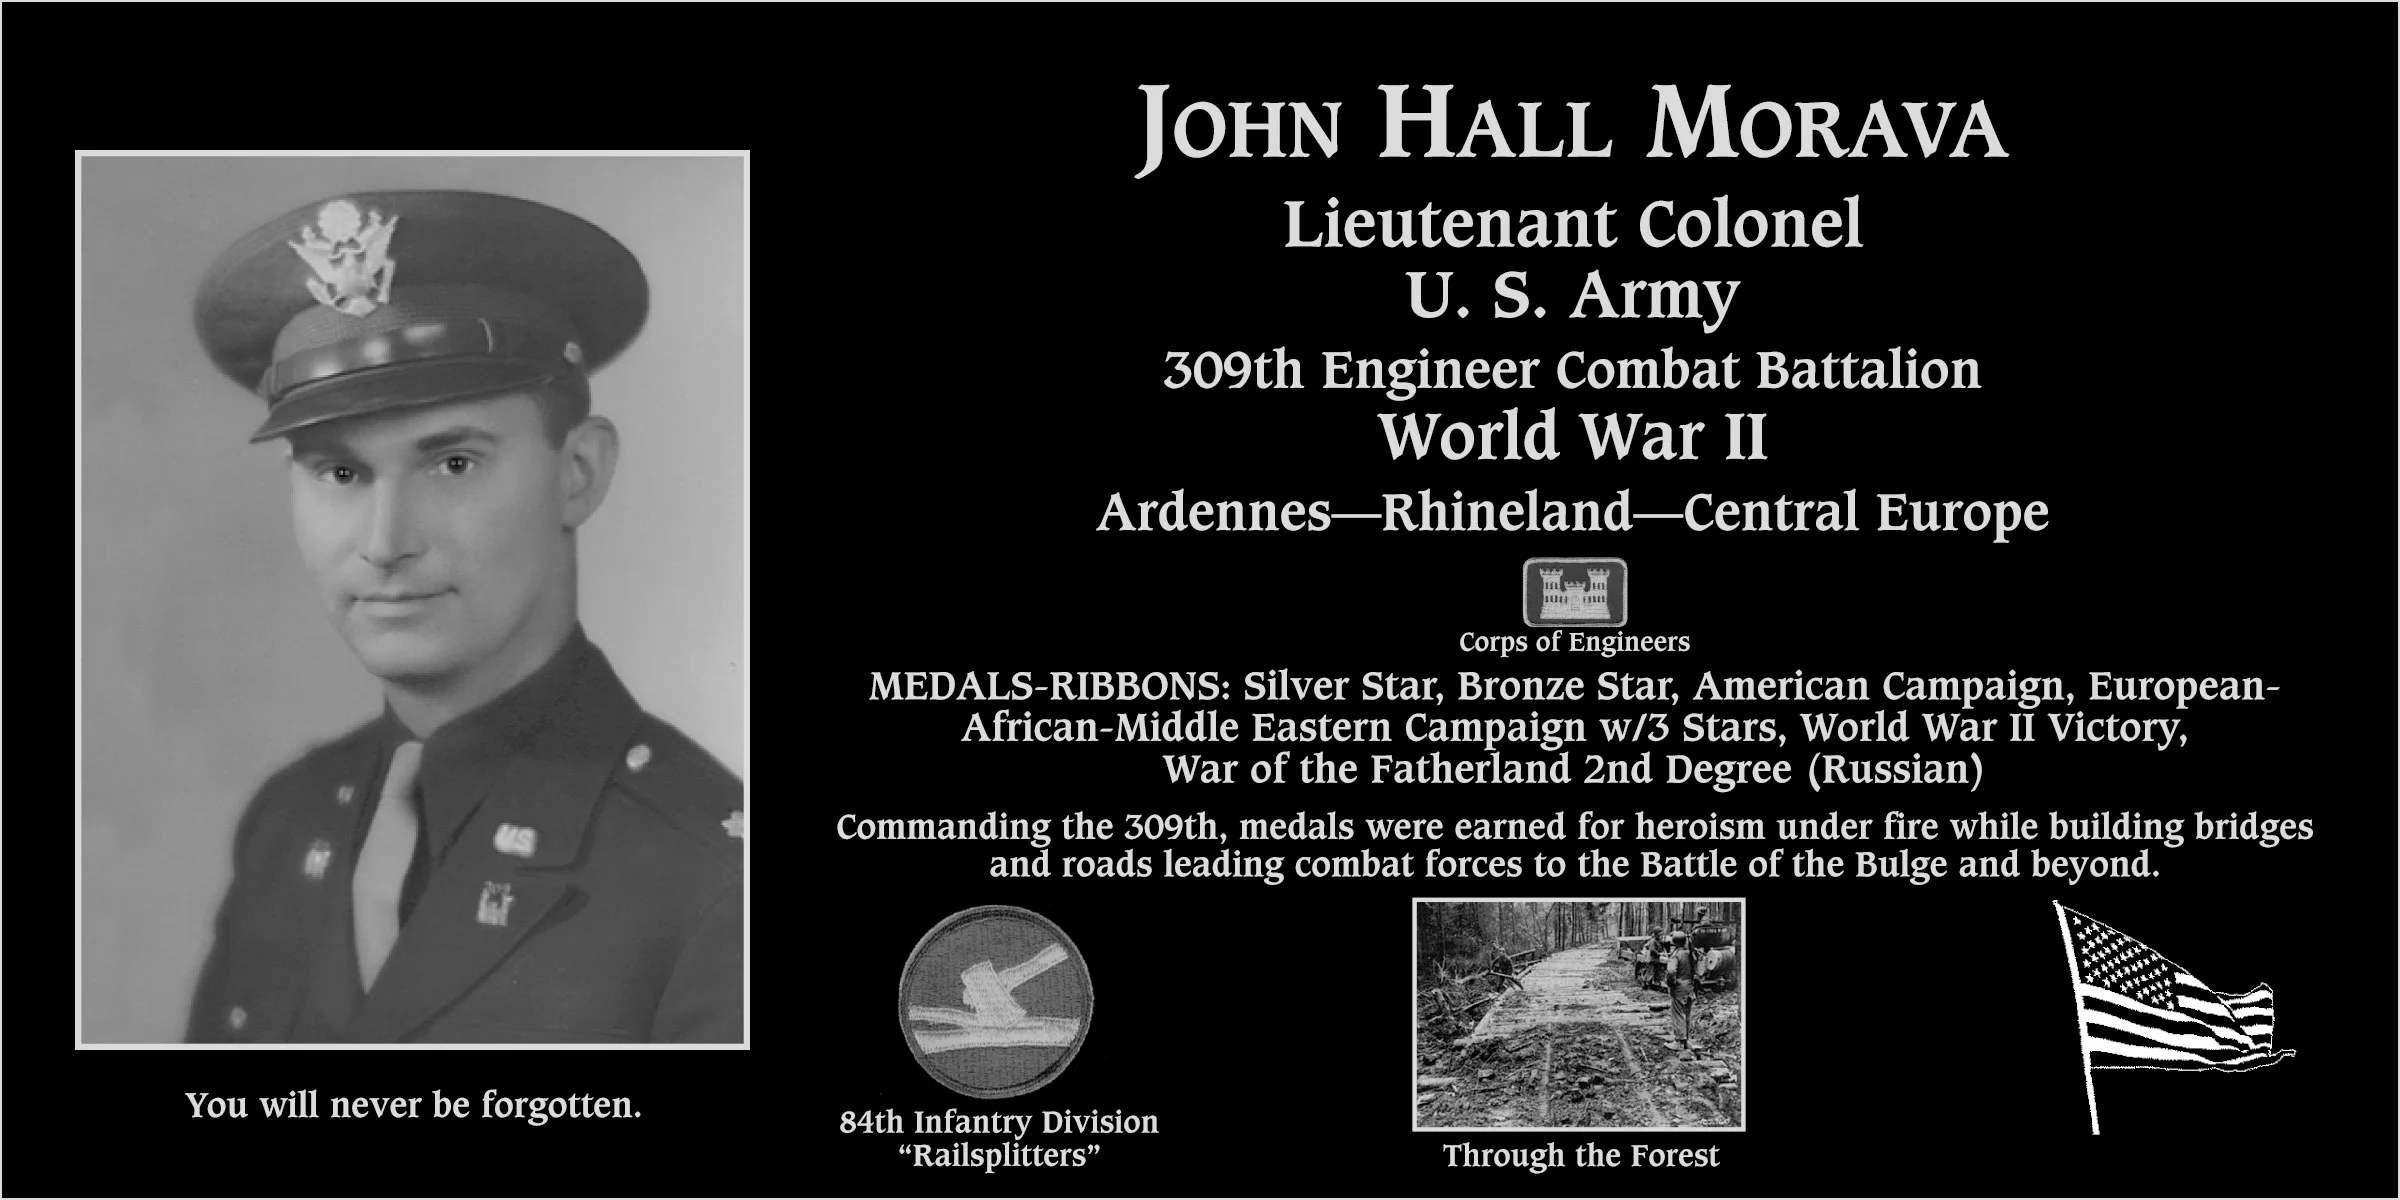 John Hall Morava